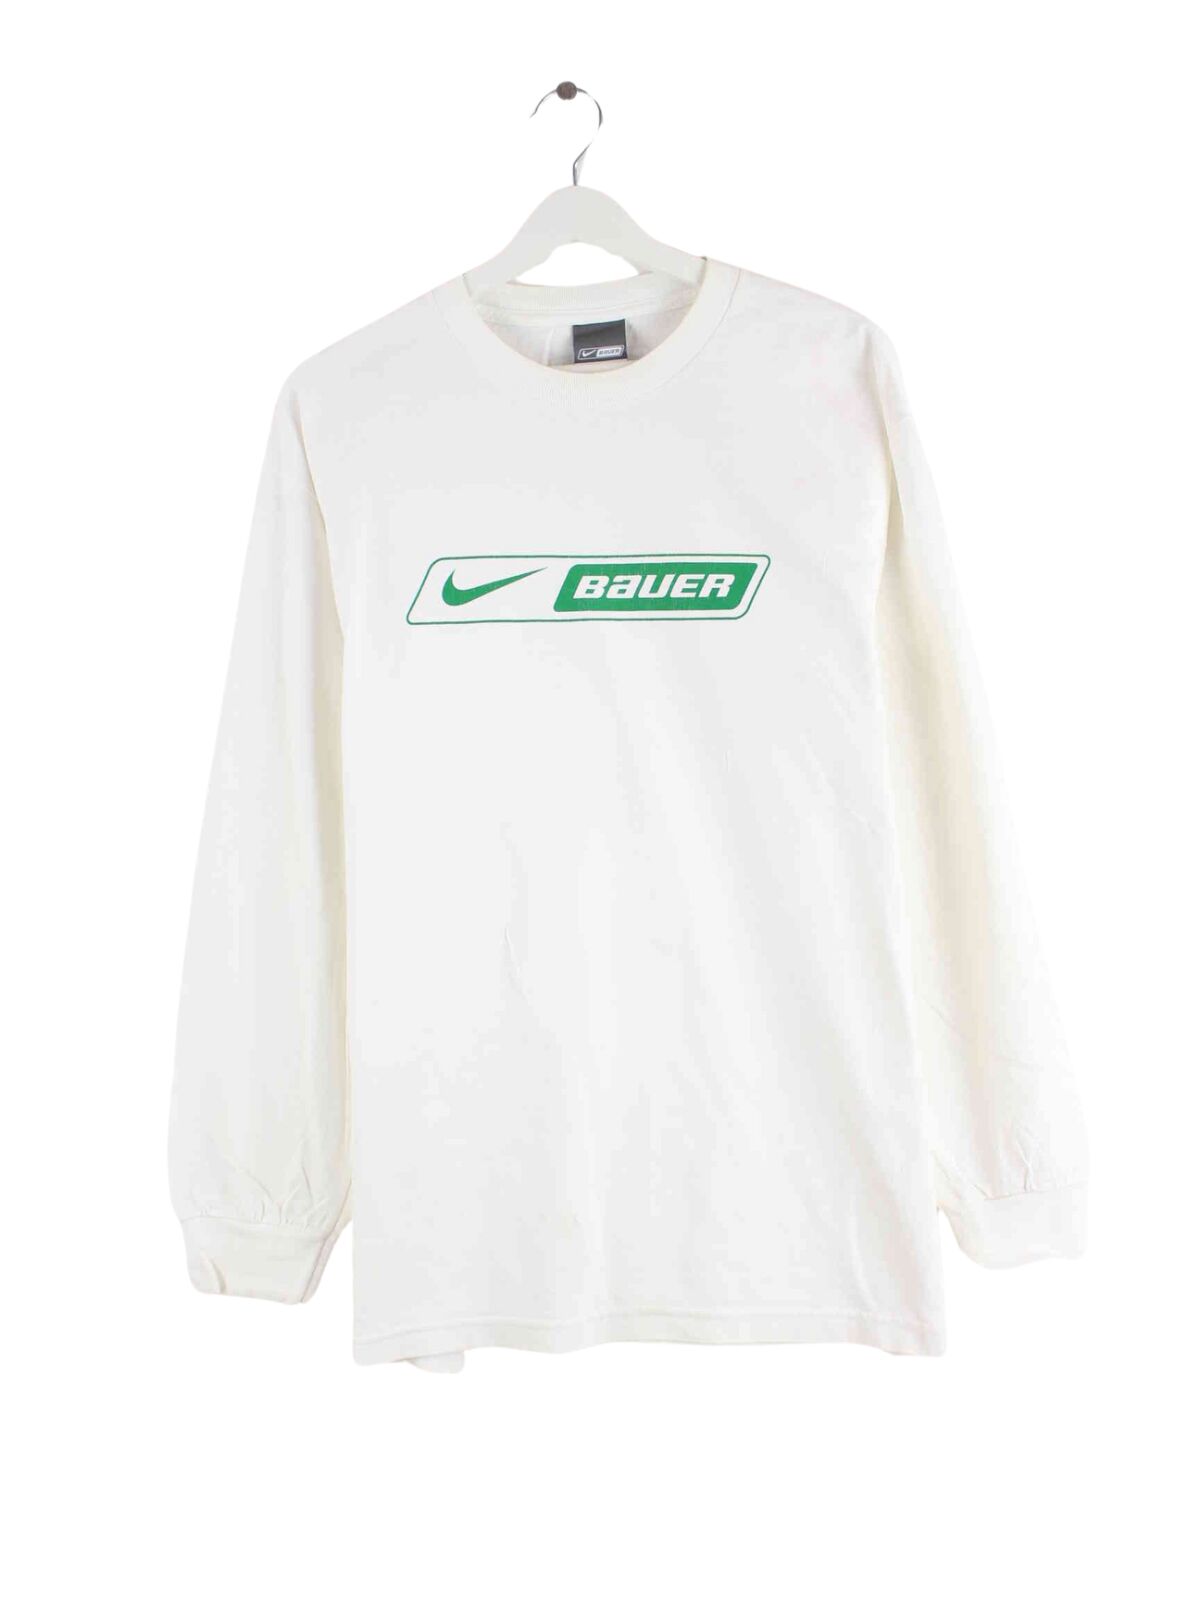 Nike Bauer Print Sweatshirt Weiß L (front image)